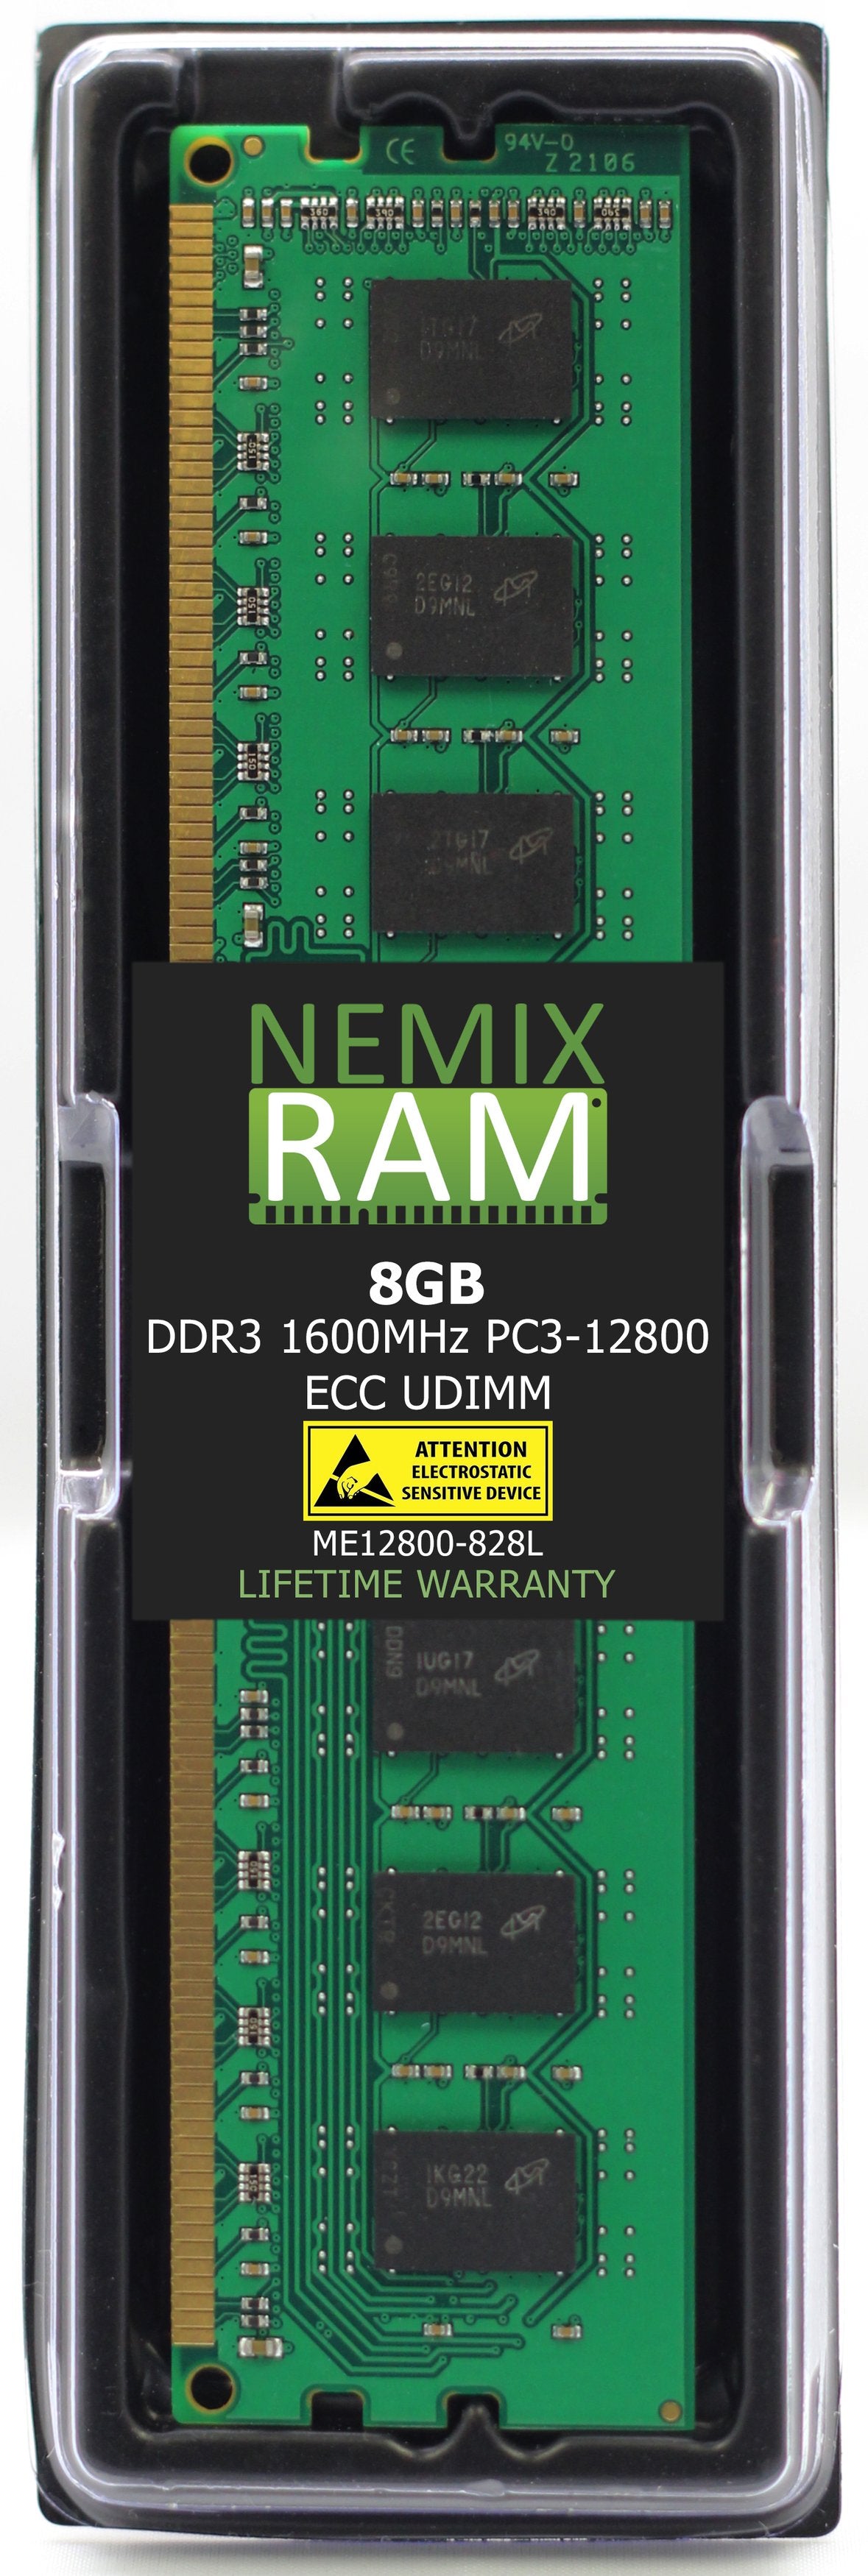 8GB DDR3 1600MHZ PC3-12800 ECC UDIMM Compatible with Supermicro MEM-DR380L-CL02-EU16